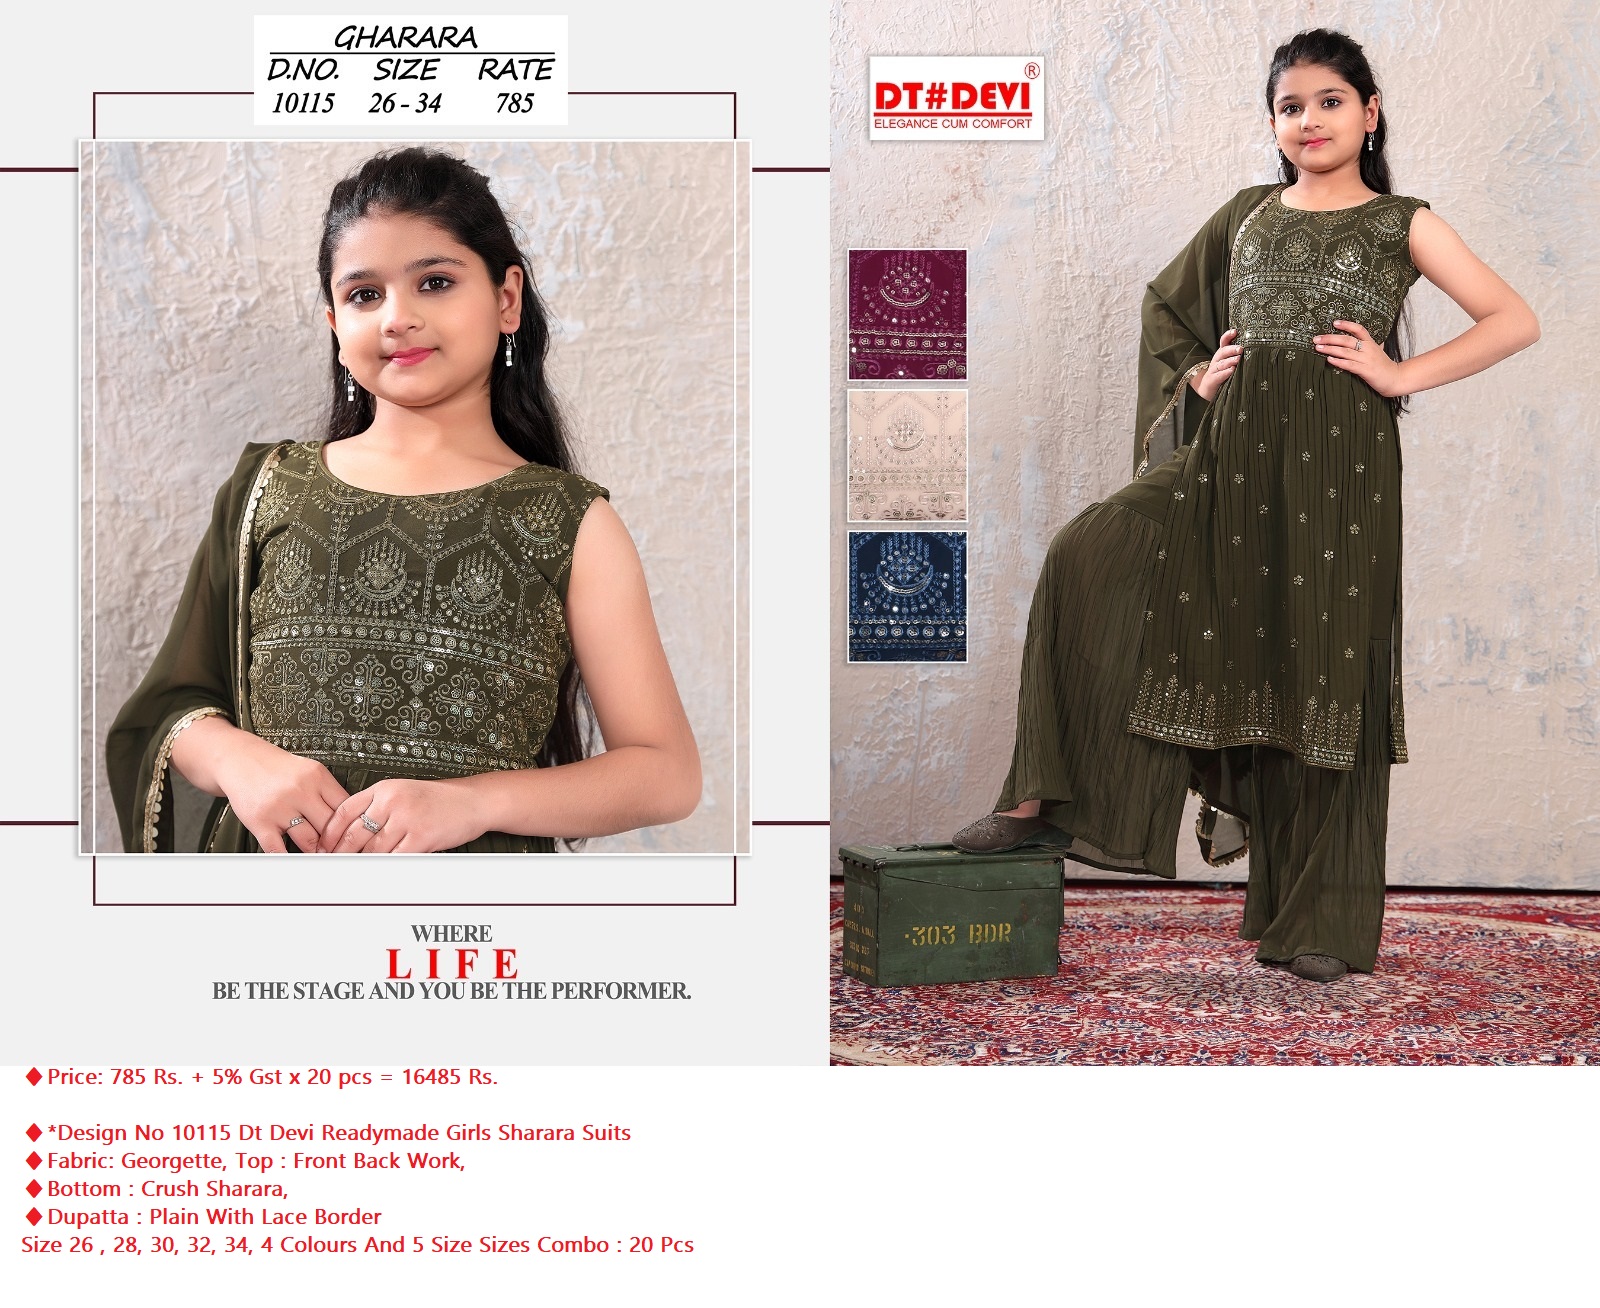 Dt Devi Design No 10115 Readymade Girls Sharara Dress Catalog Lowest Price